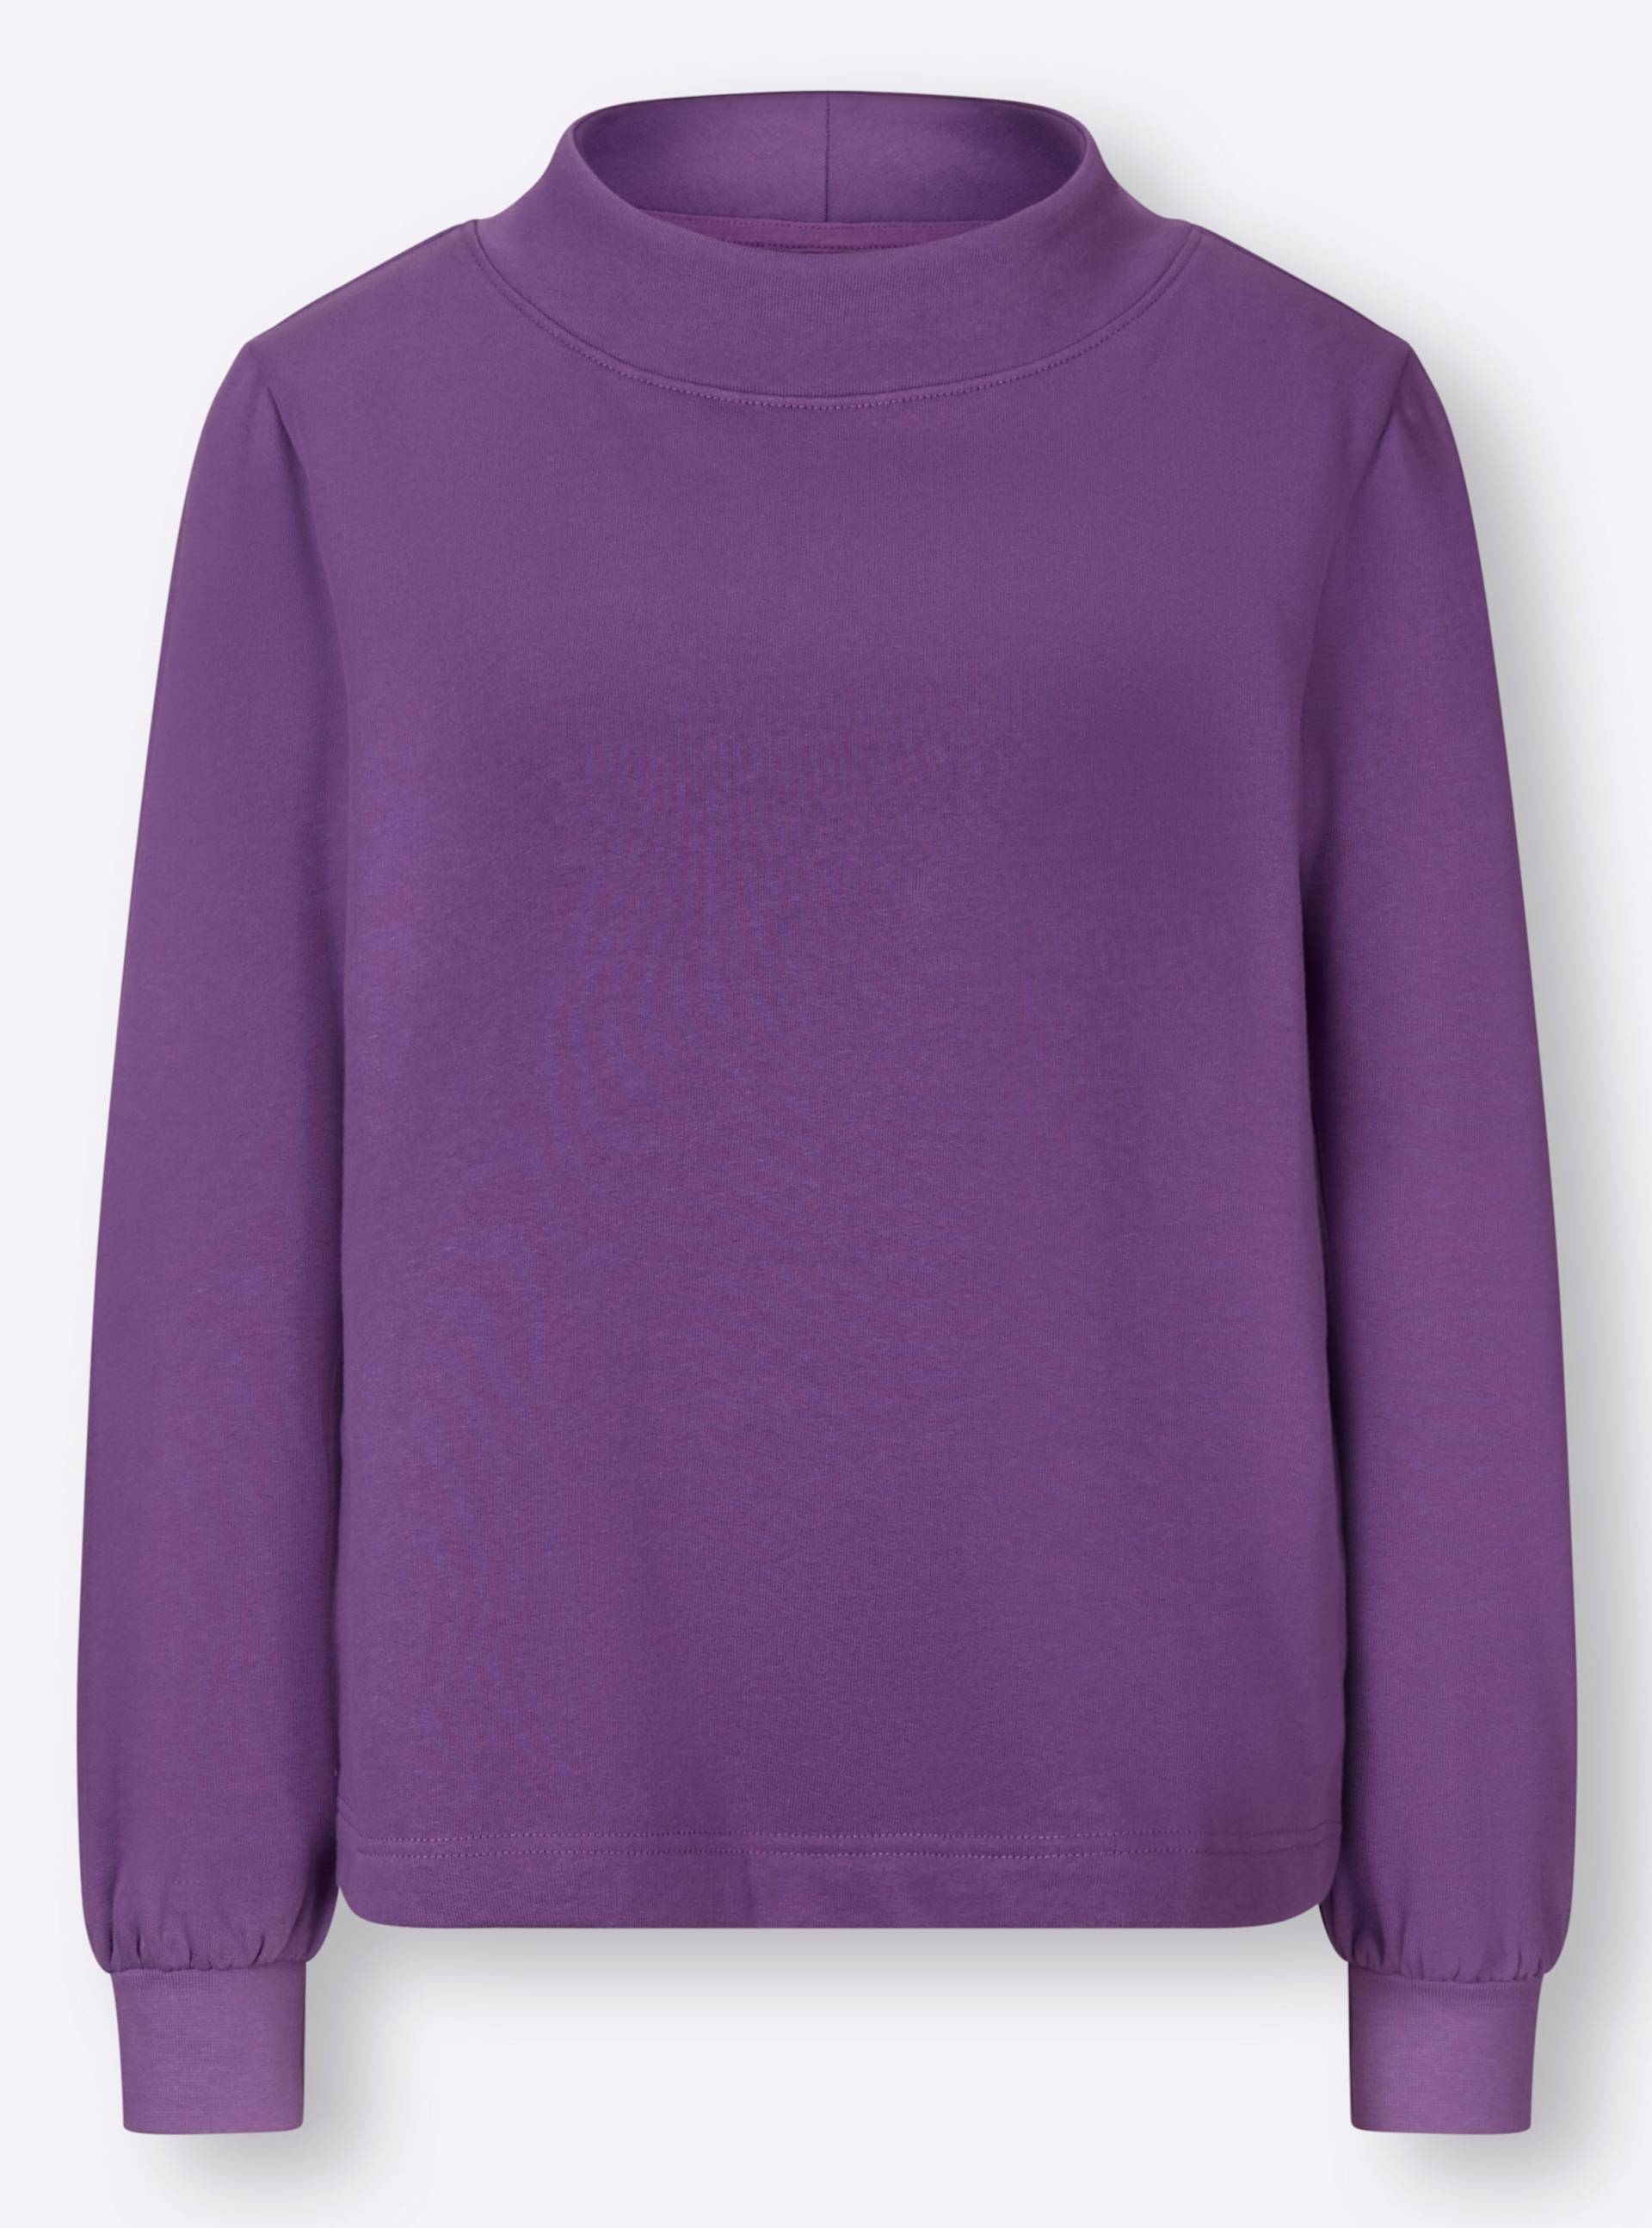 Sweatshirt in lila von heine von heine